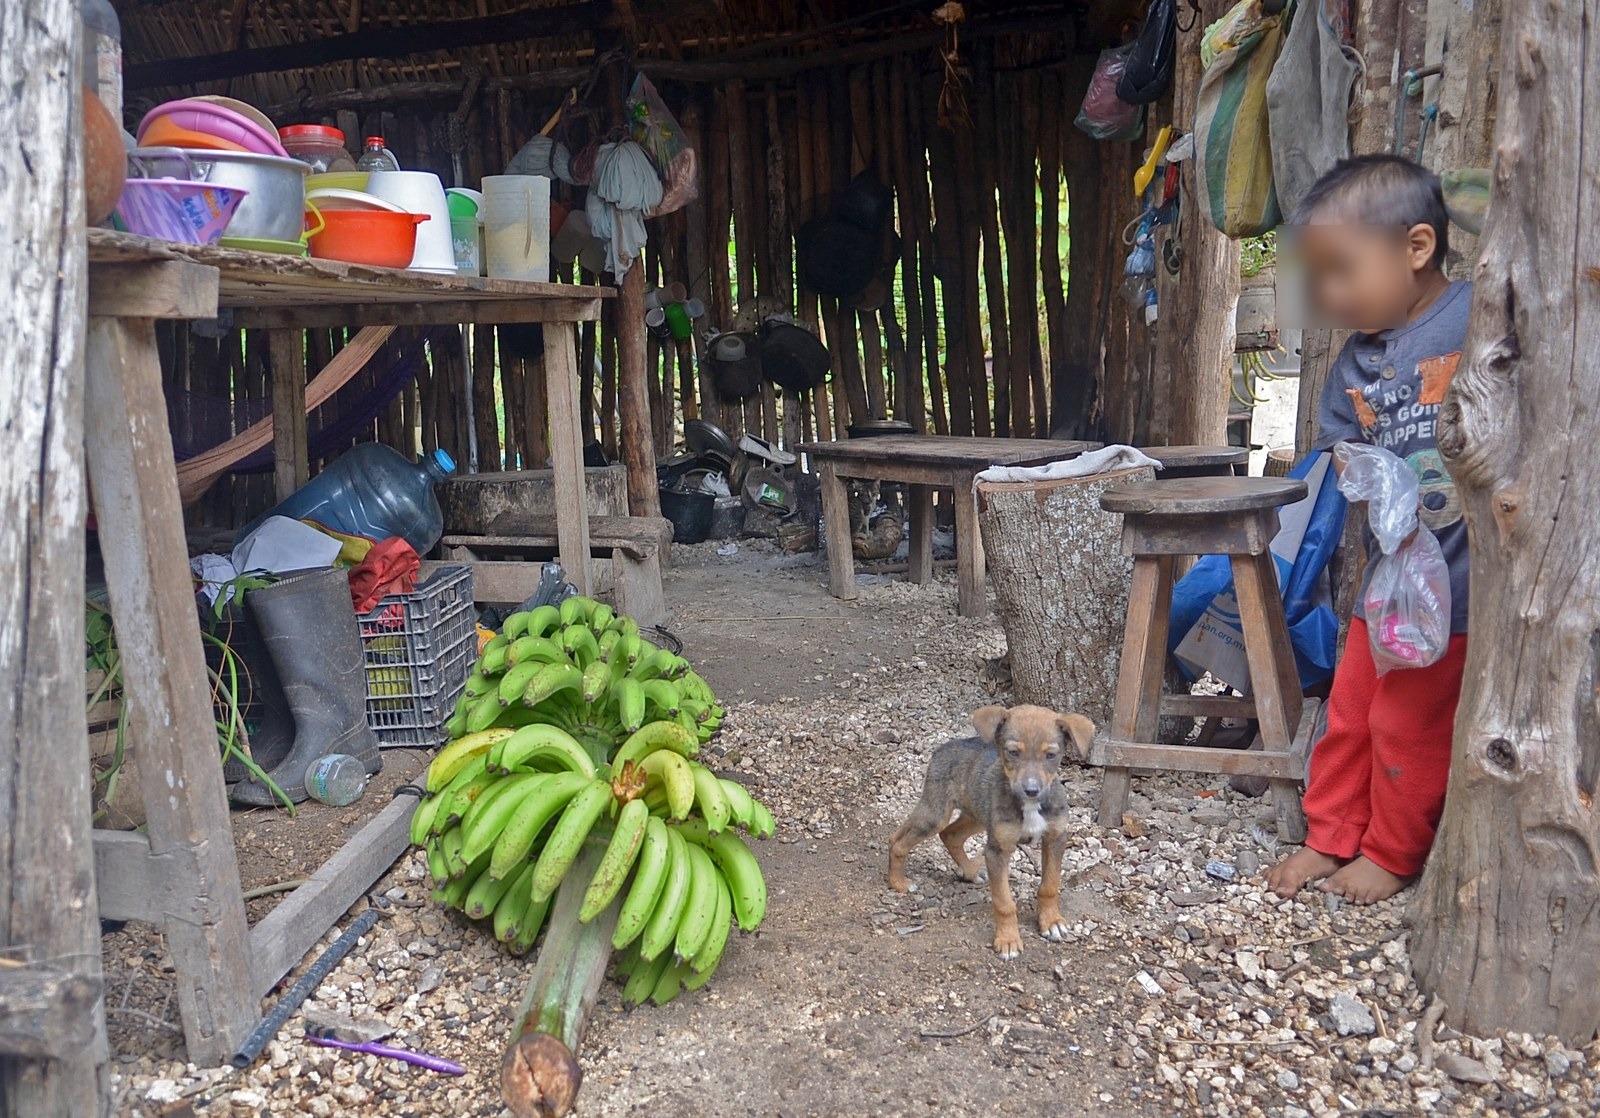 Habitantes del Norte de Quintana Roo sufren carencia de alimentos: Coneval